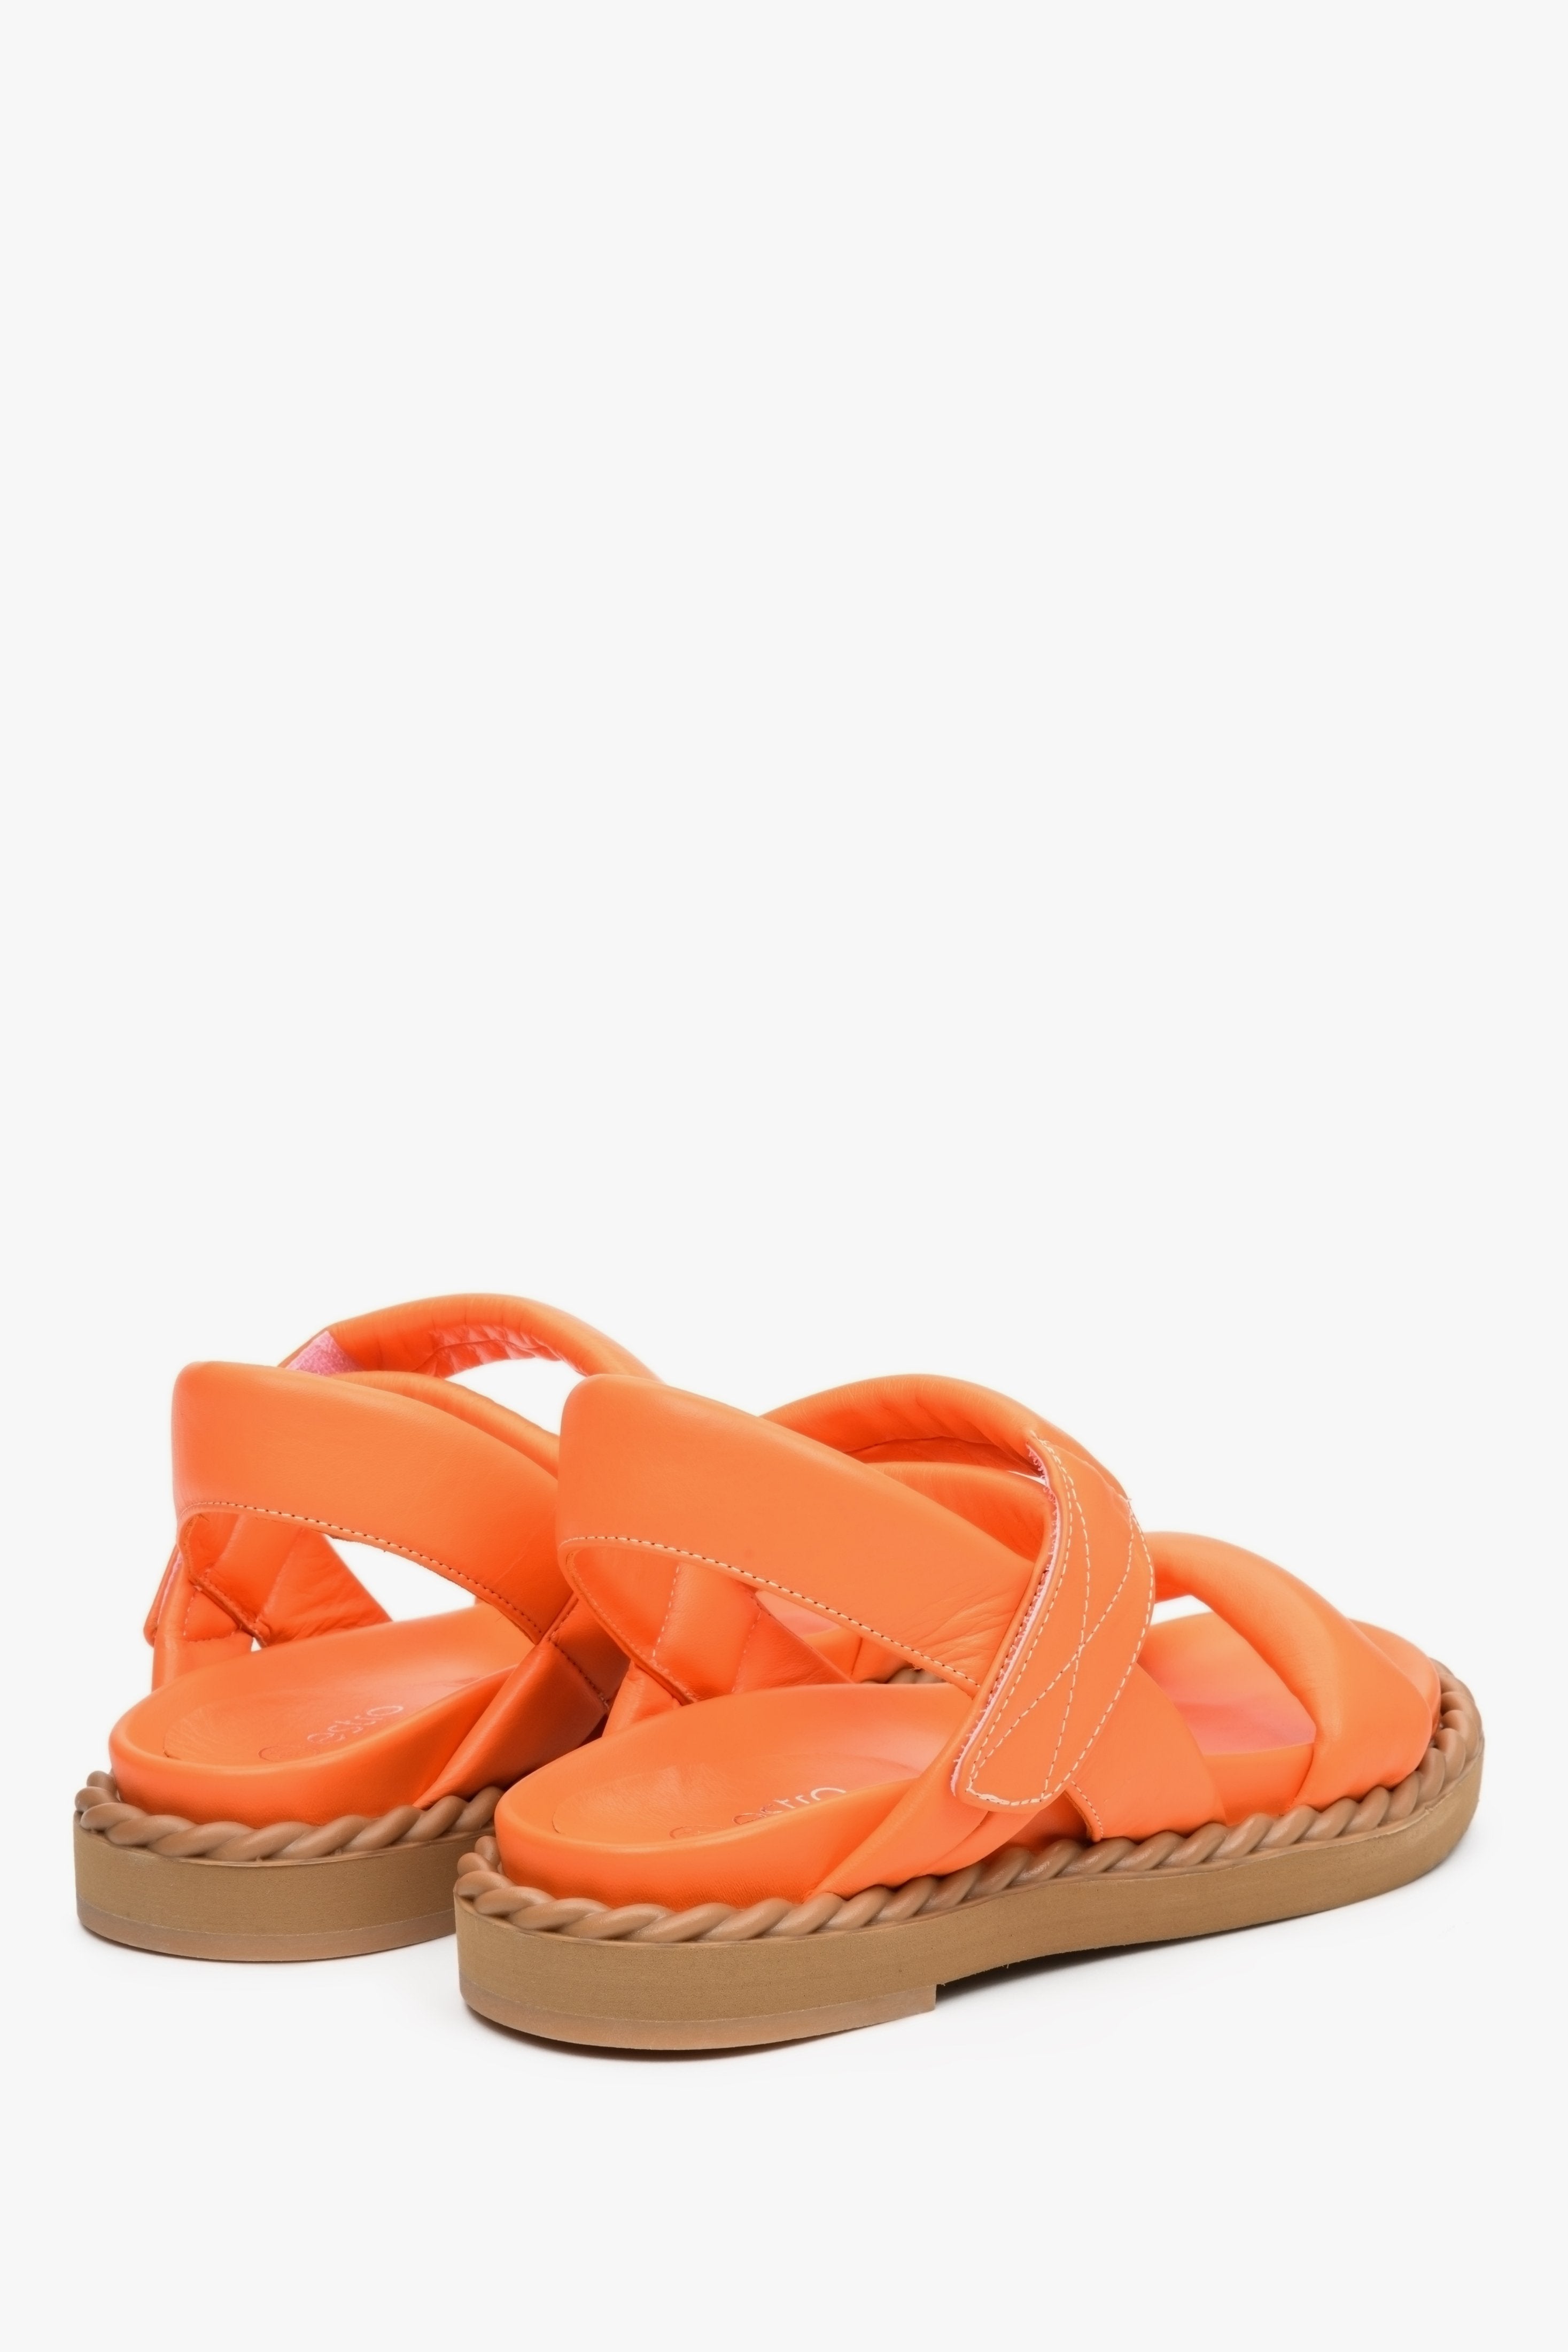 Sandały damskie w kolorze pomarańczowym z pasków na lato na wygodnej, elastycznej podeszwie - prezentacja tyłu i boku butów.